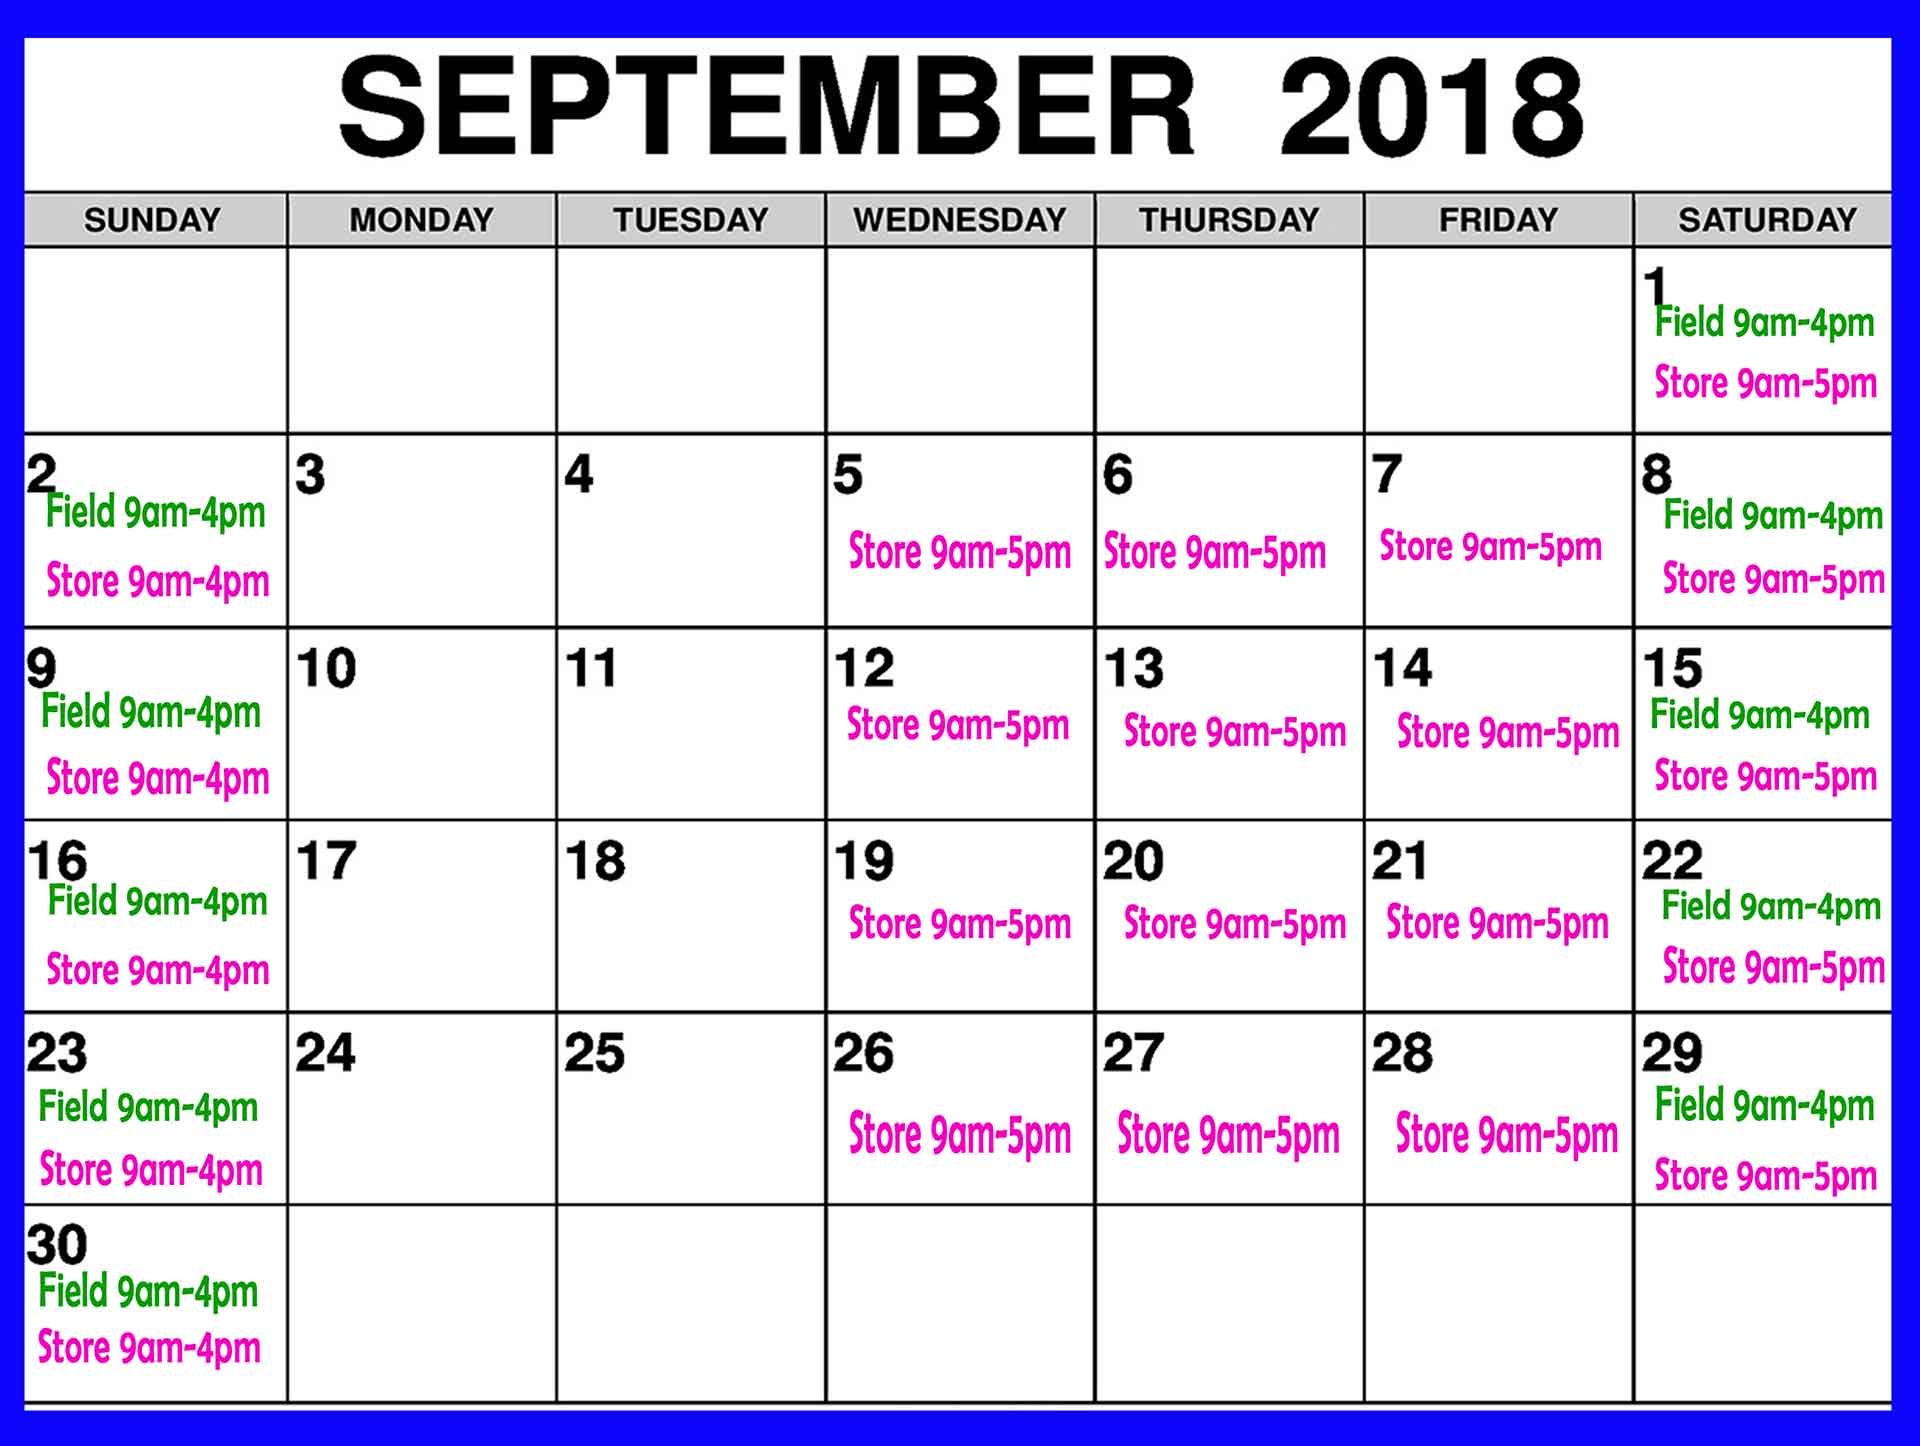 September 2018 Schedule